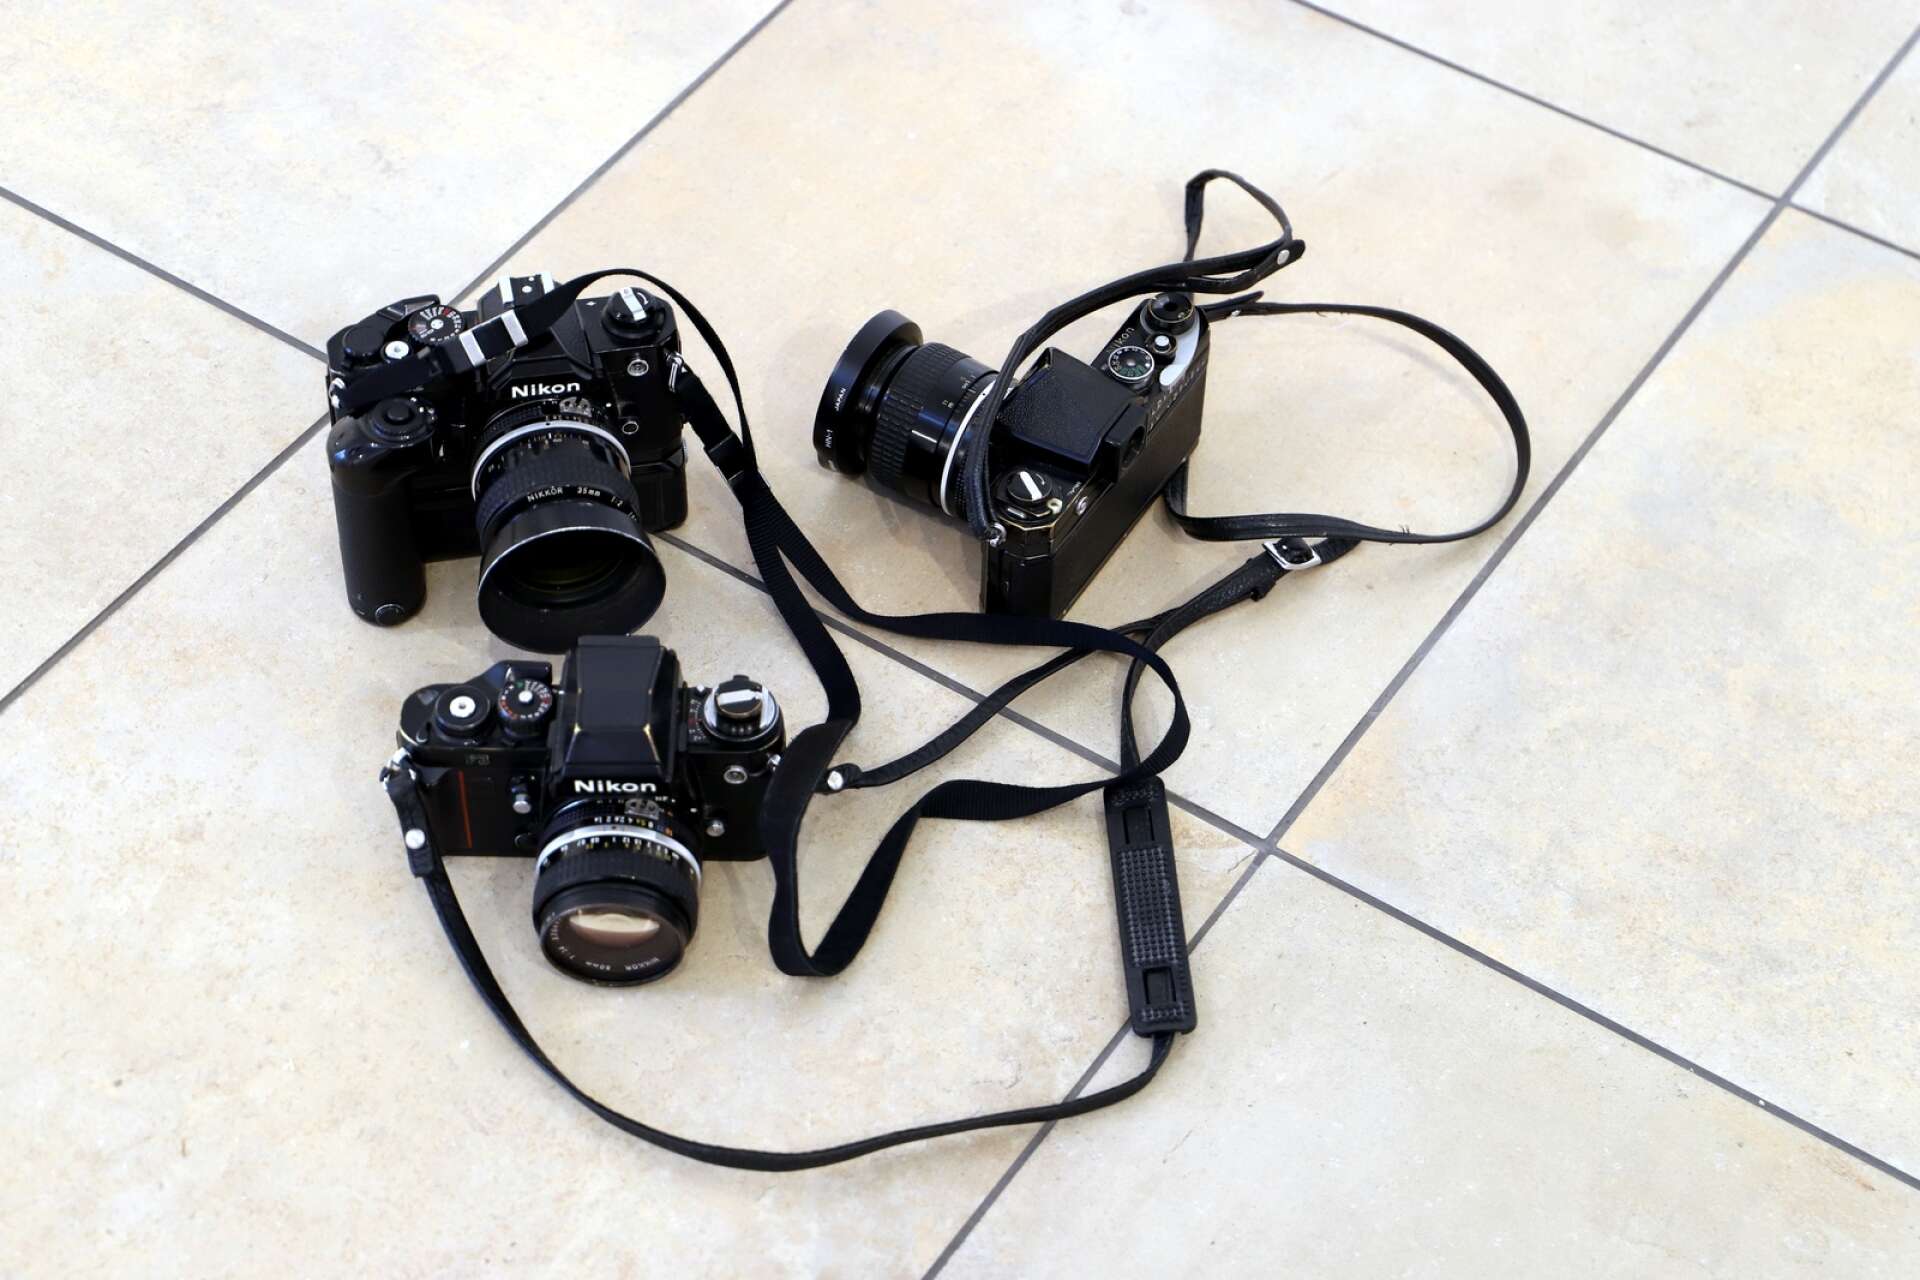 Pålitliga resekamrater från tidigare år: Staffan Jofjell har tagit med några av sina gamla kameror till utställningen.